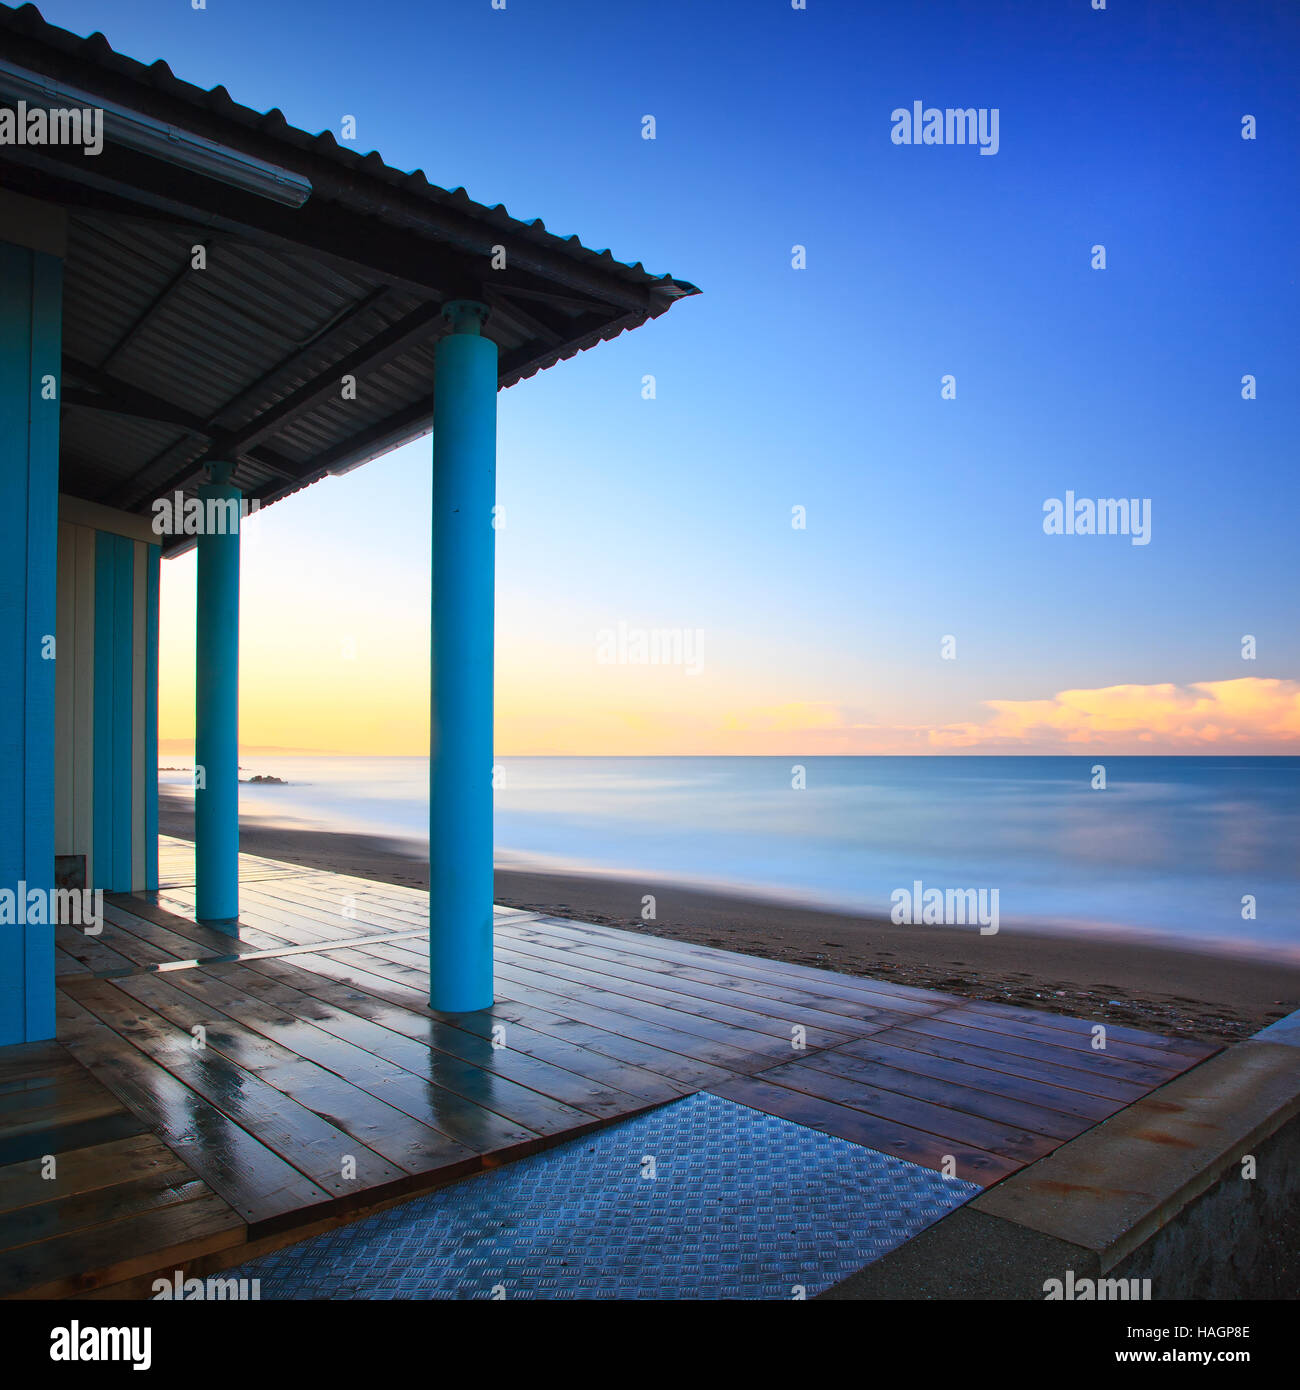 Stabilimento balneare sulla spiaggia o bath house e architettura colonnato, mare di mattina. Toscana Italia. Fotografie con lunghi tempi di esposizione. Foto Stock